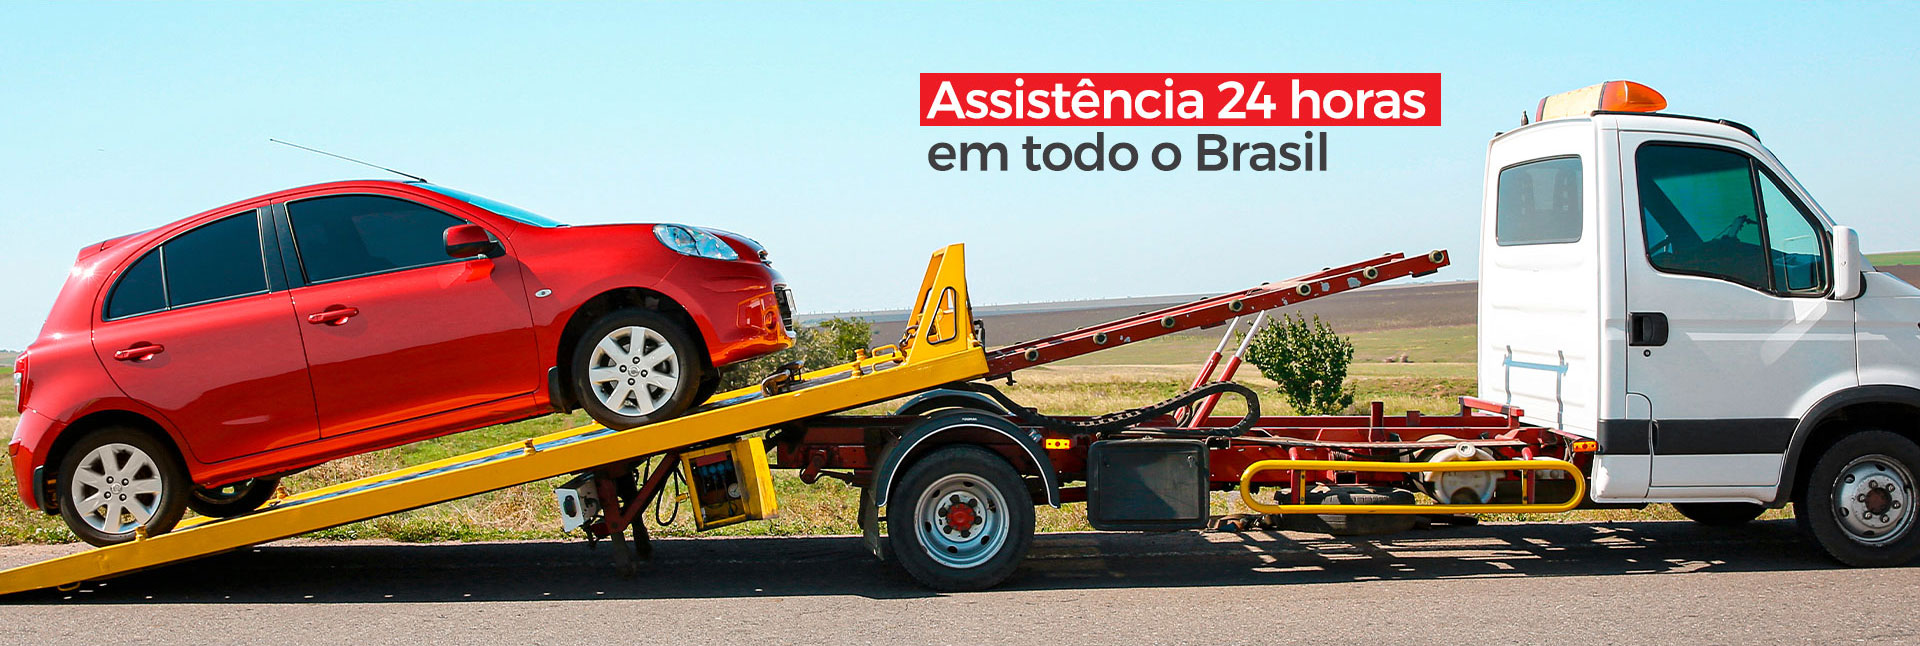 Assistência 24 horas em todo o Brasil